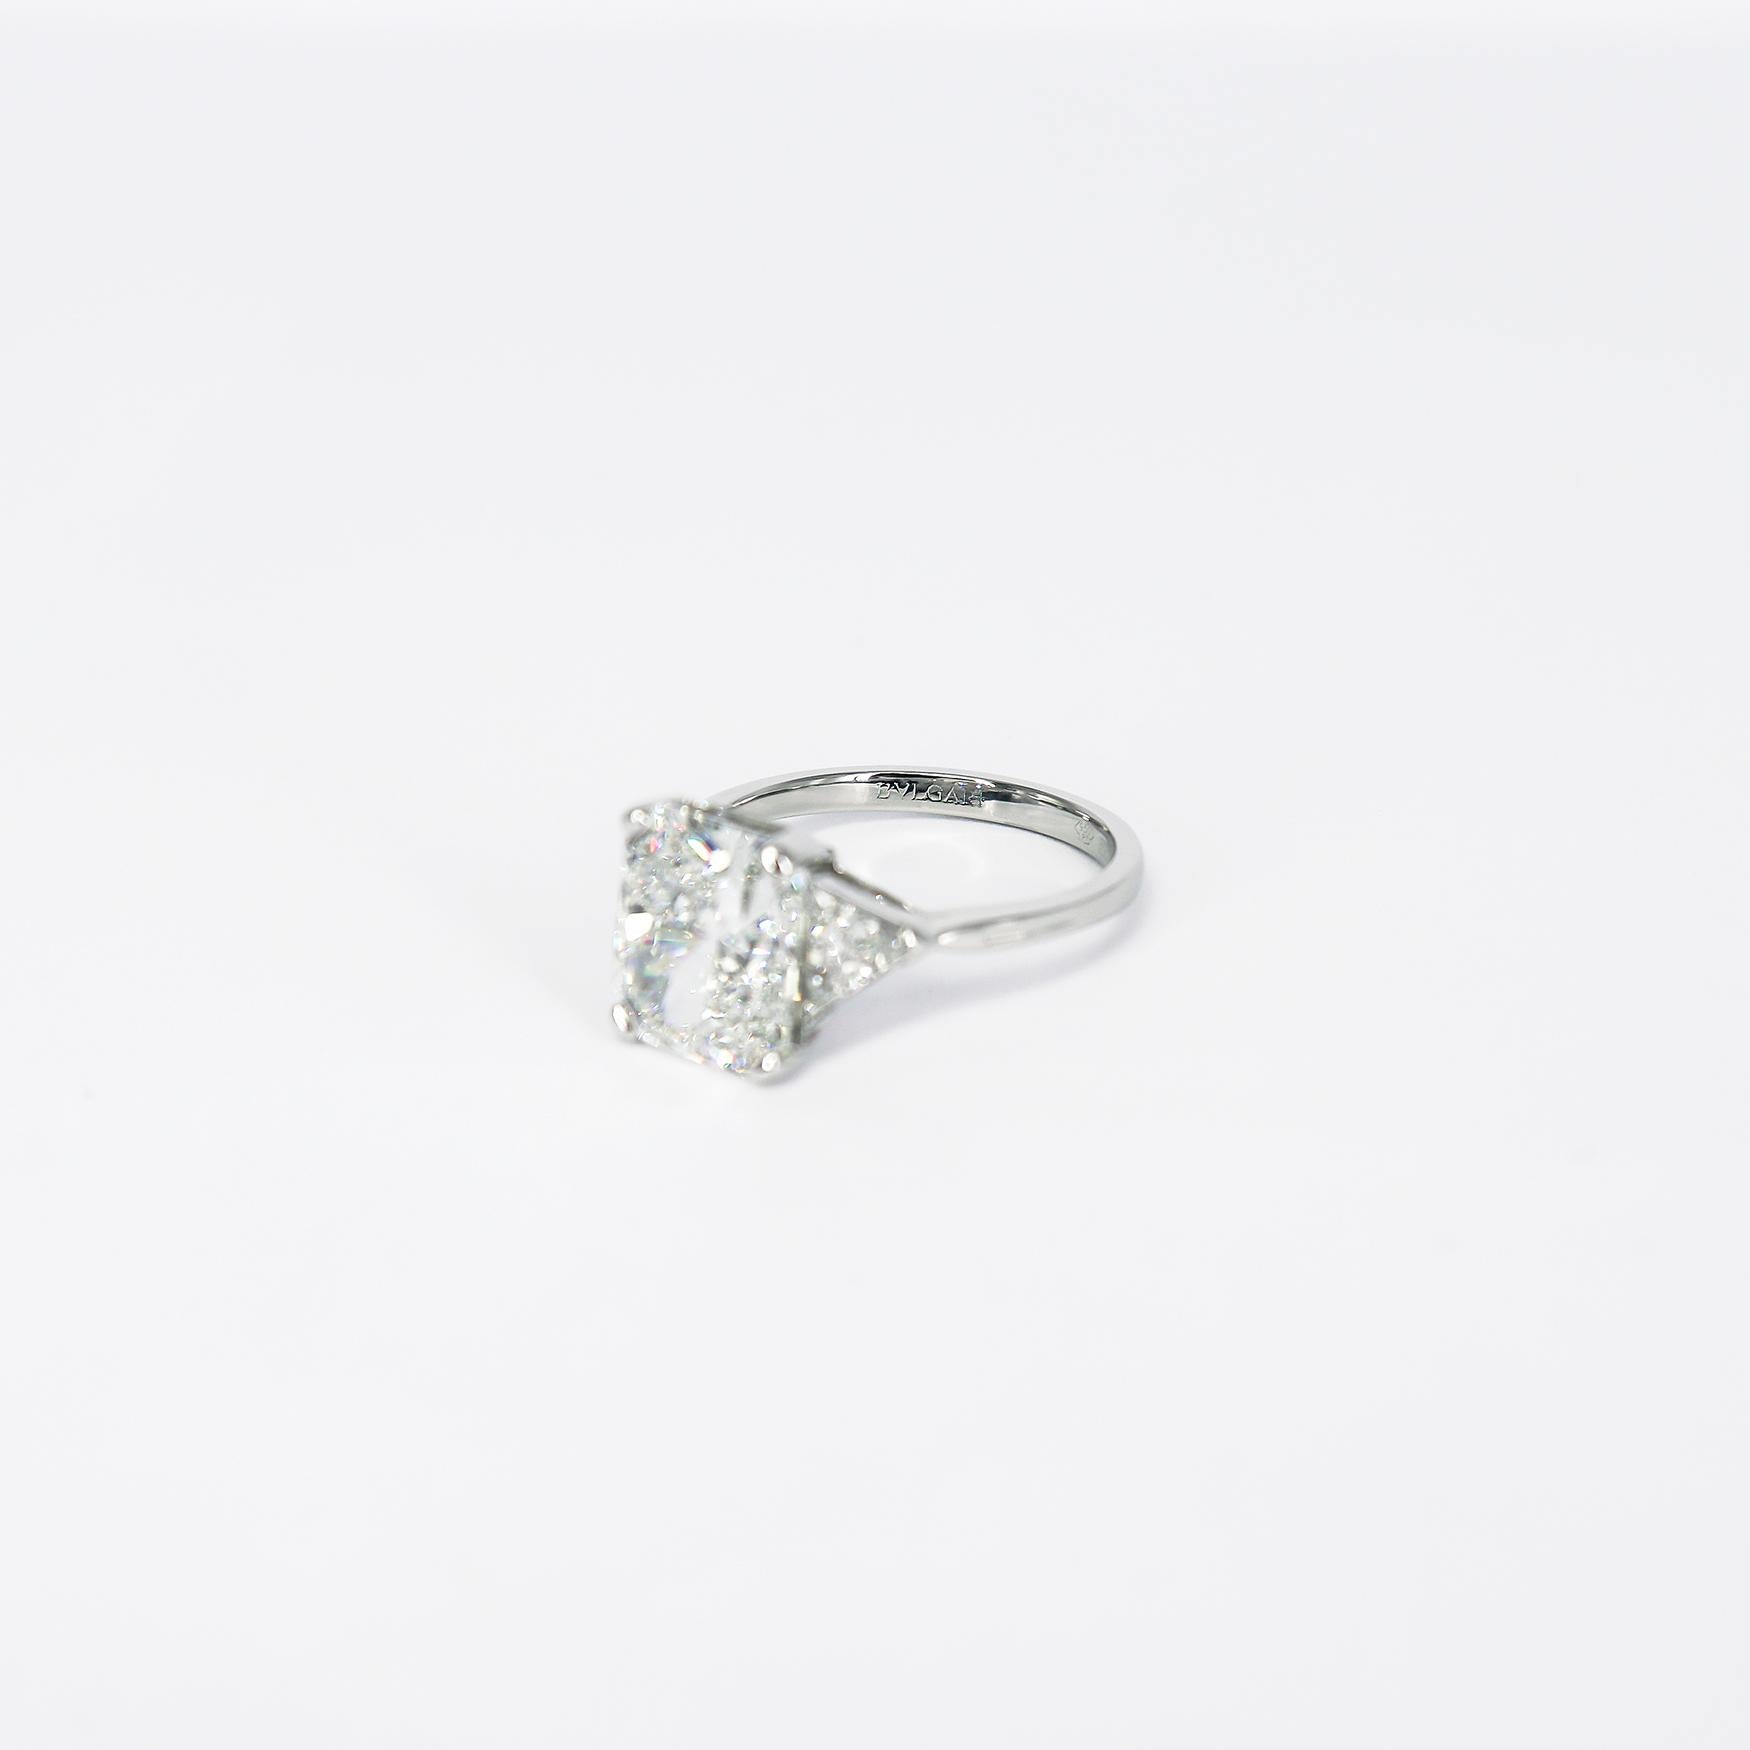 Women's or Men's BVLGARI GIA Certified 4.03 Carat H SI1 Radiant Cut Diamond Three-Stone Ring